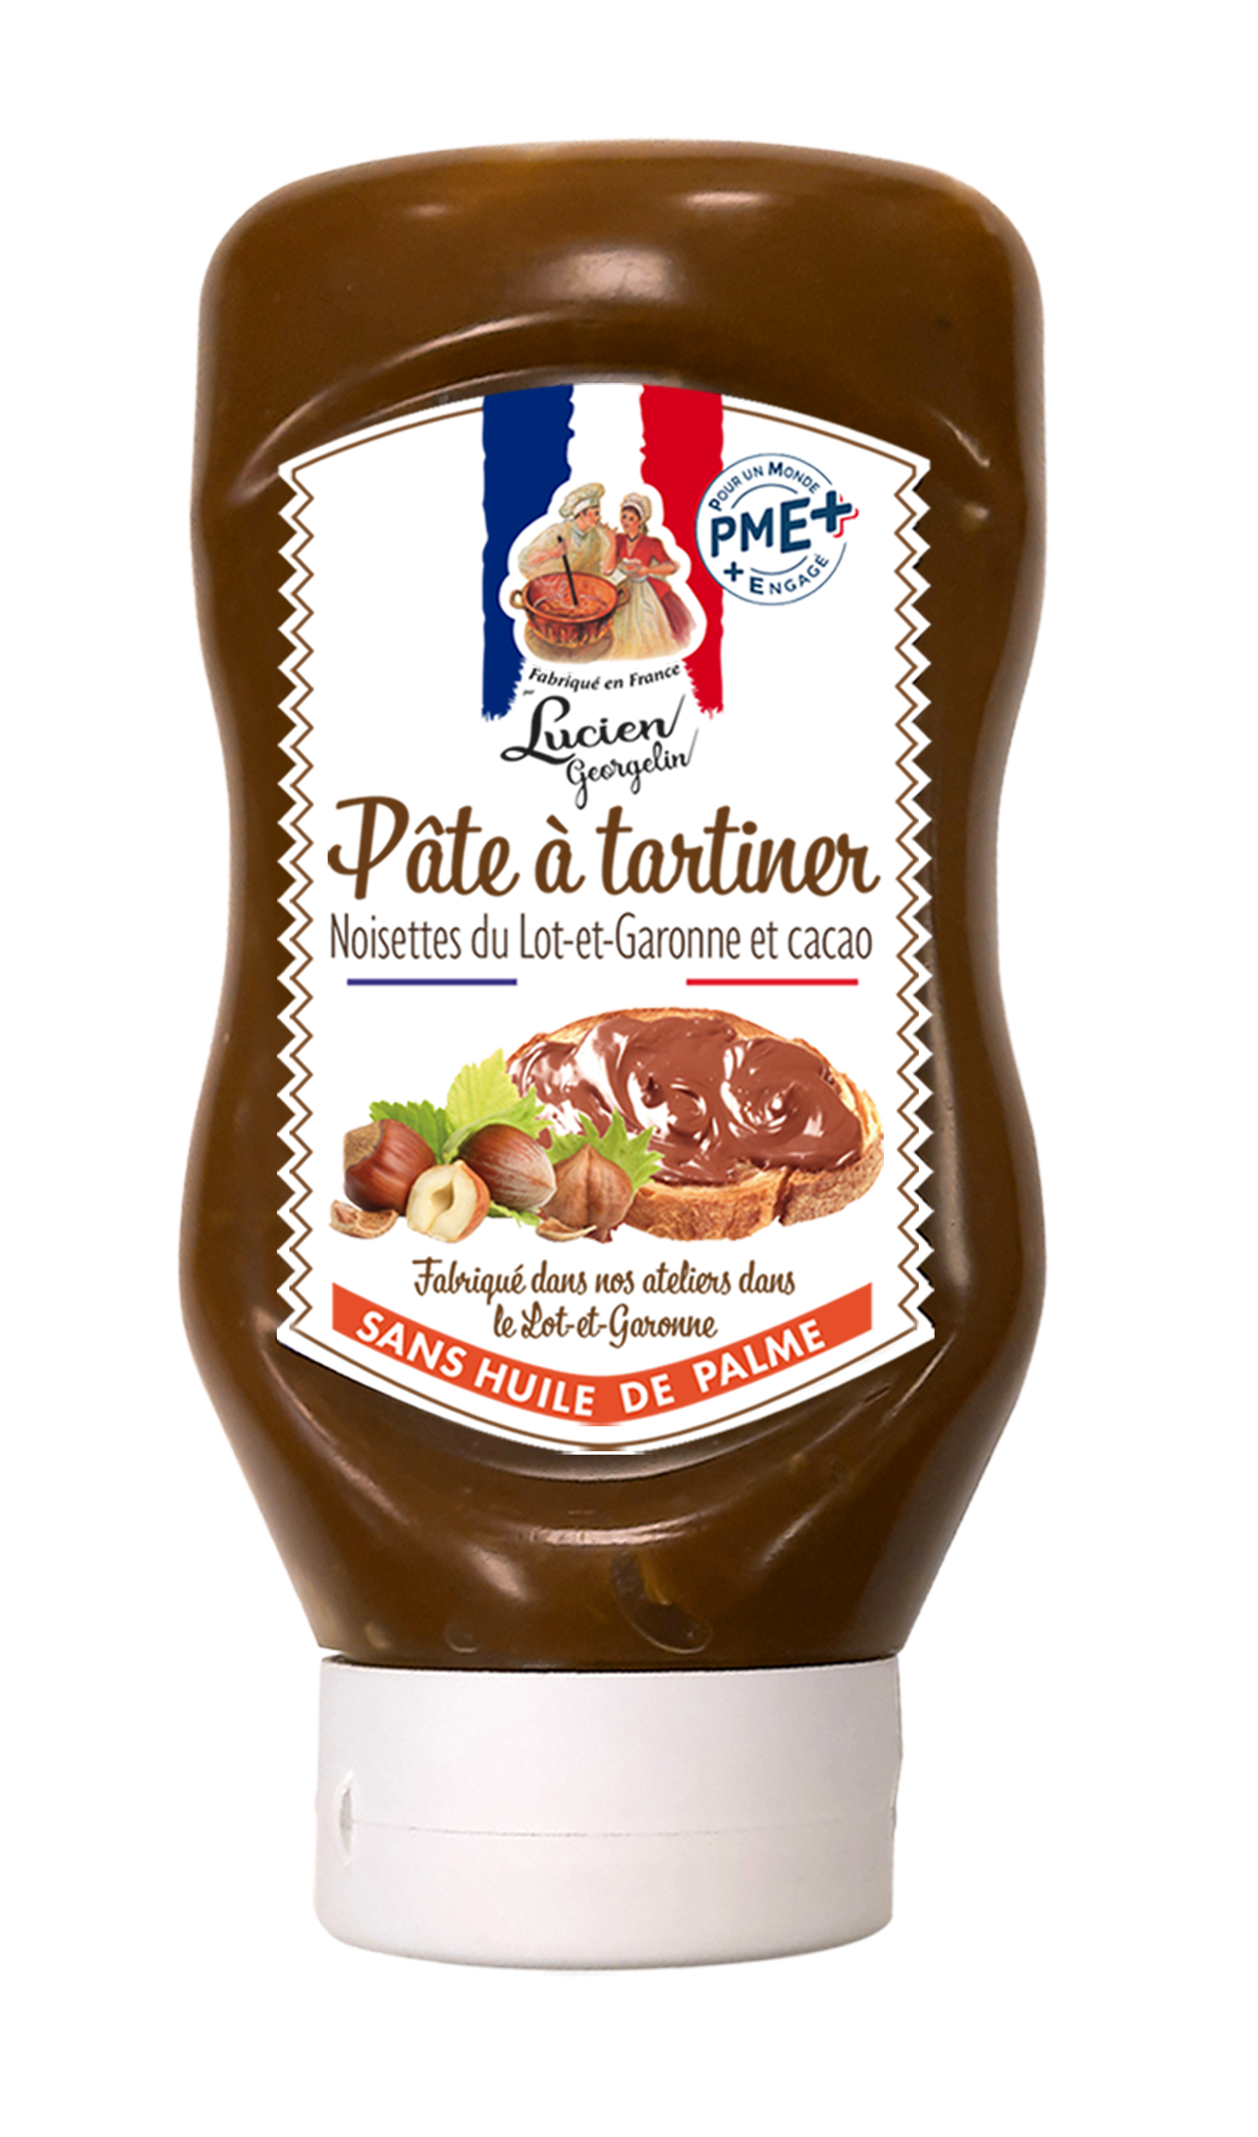 Hazelnut spread from Lot-et-Garonne in a squeezer packaging